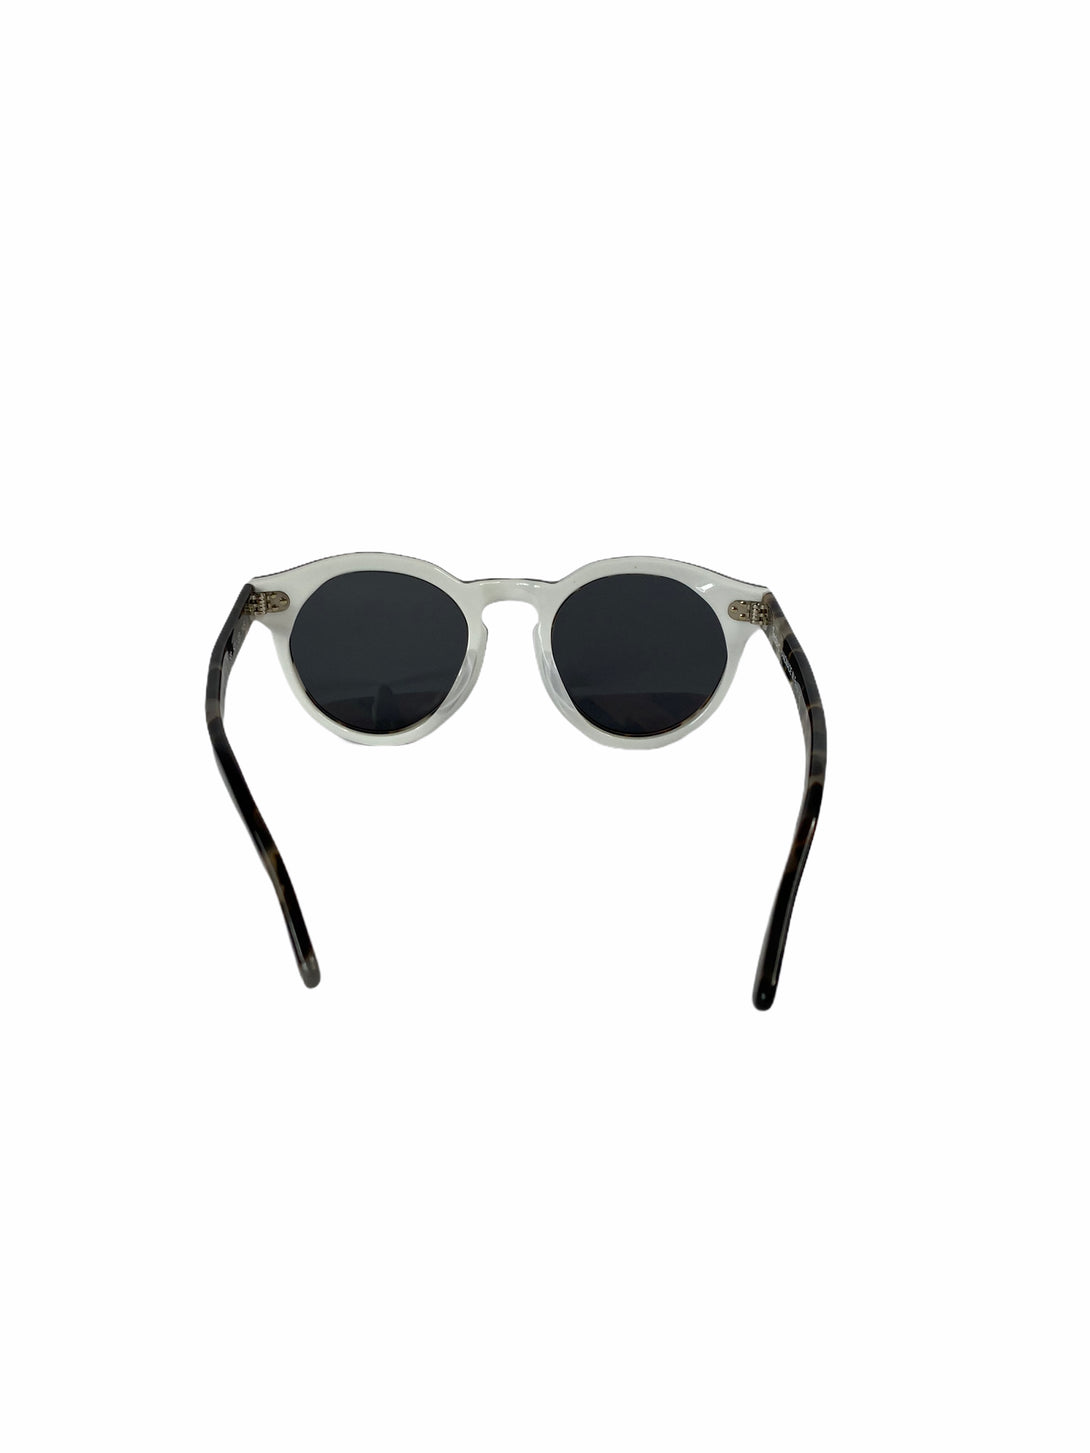 Illesteva Tortoise Shell Cat Eye Sunglasses - Siopaella Designer Exchange